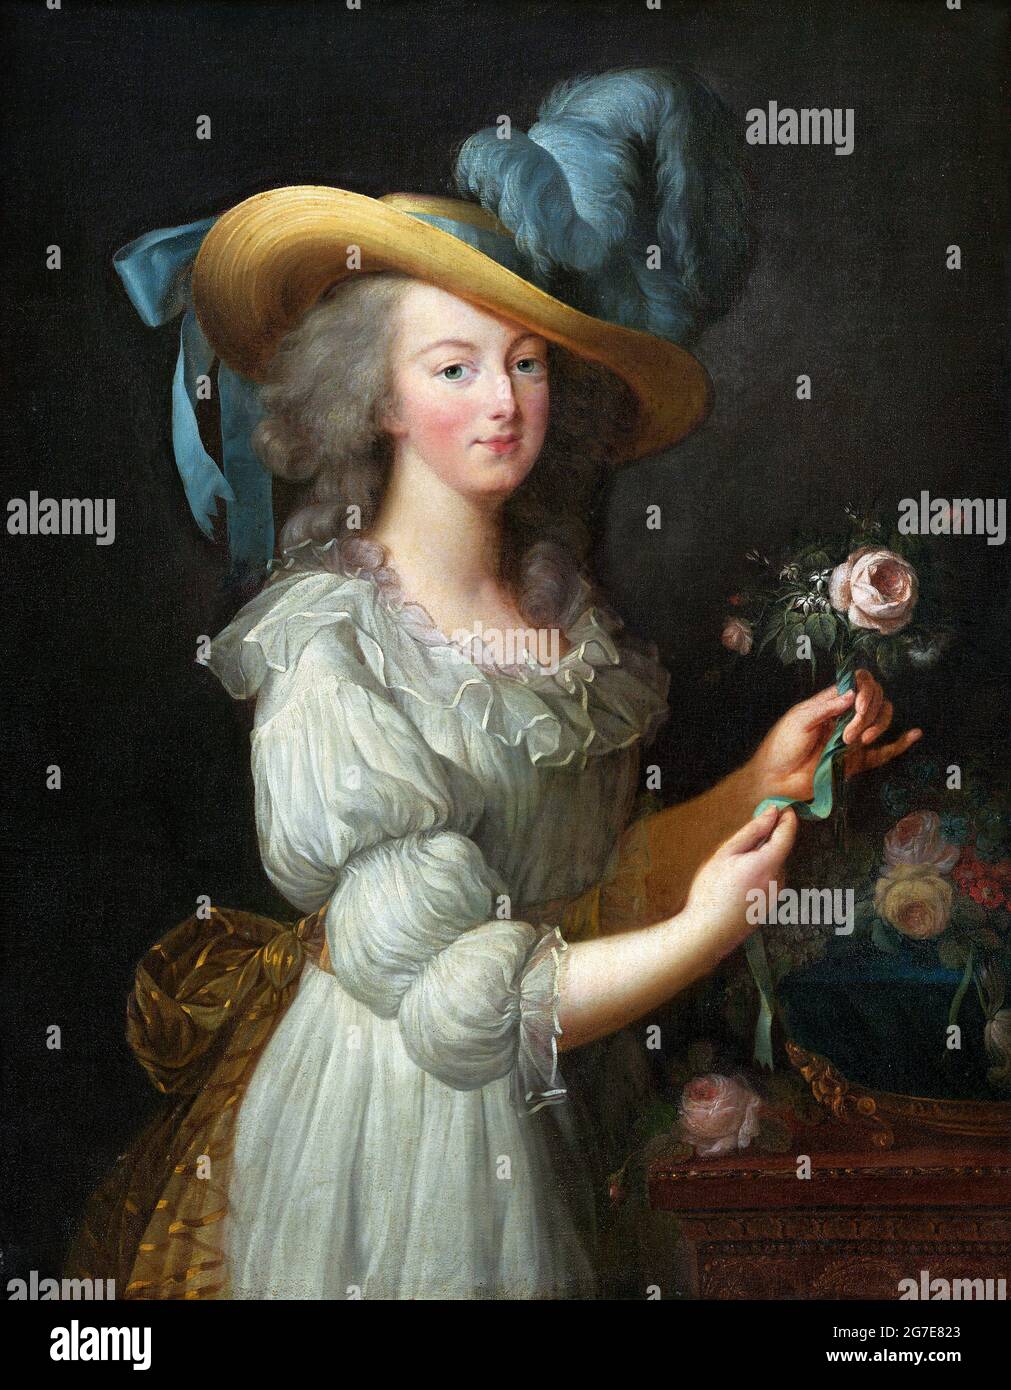 Maria Antonietta. Ritratto di Maria Antonietta (1755-1793), Regina di Francia e moglie di Re Luigi XVI, di Élisabeth Vigée le Brun, olio su tela, c.. 1783. Foto Stock